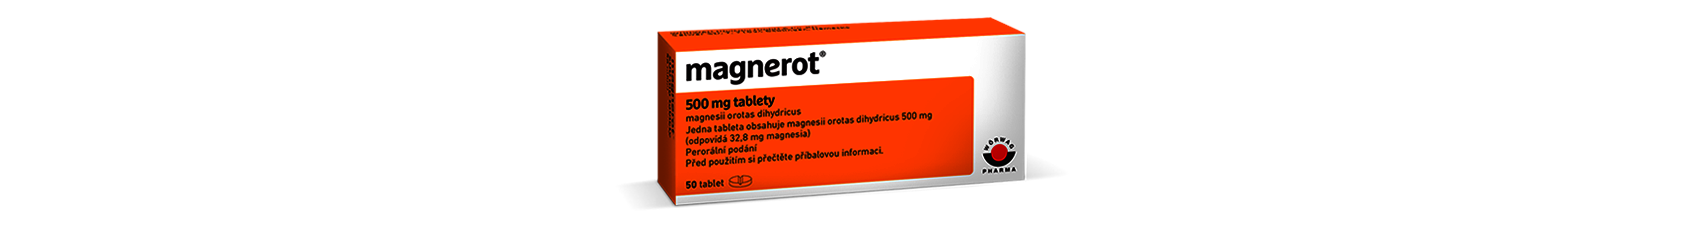 Magnesium magnerot - tablety, hořčík, cena, príbalový leták, 100tbl, skúsenosti